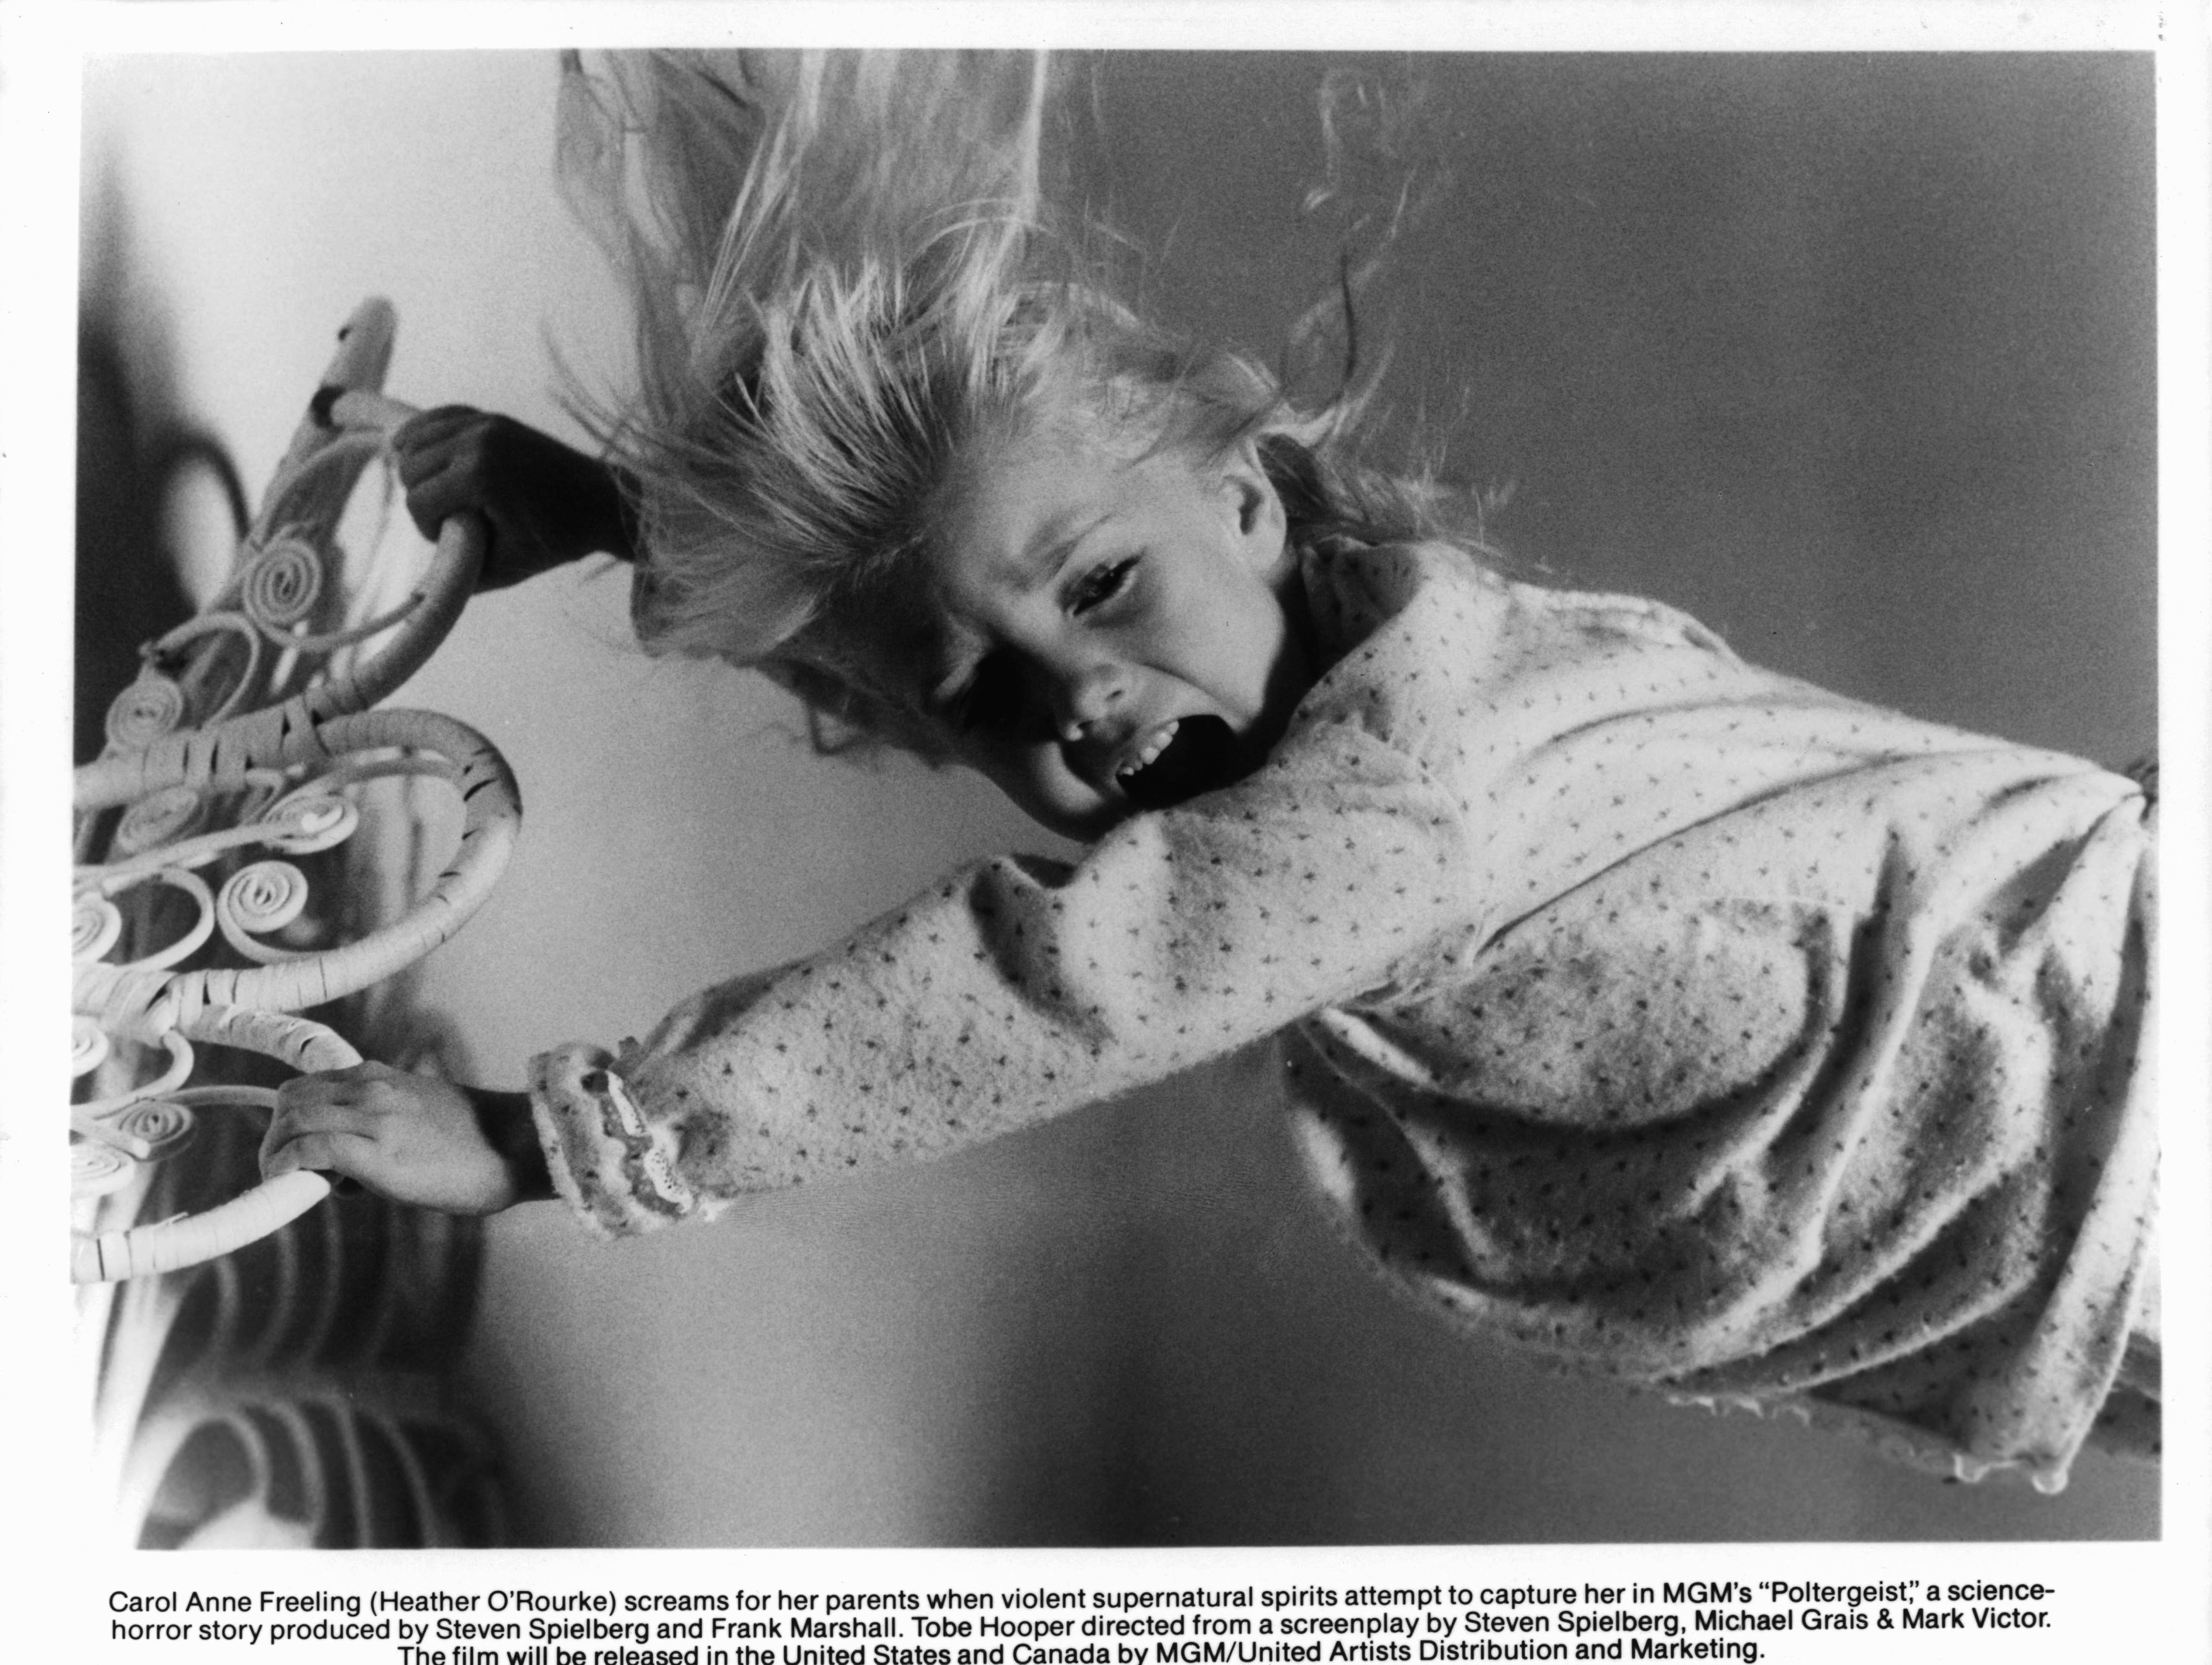 Heather O'Rourke en una escena de la película "Poltergeist" en 1982 | Fuente: Getty Images